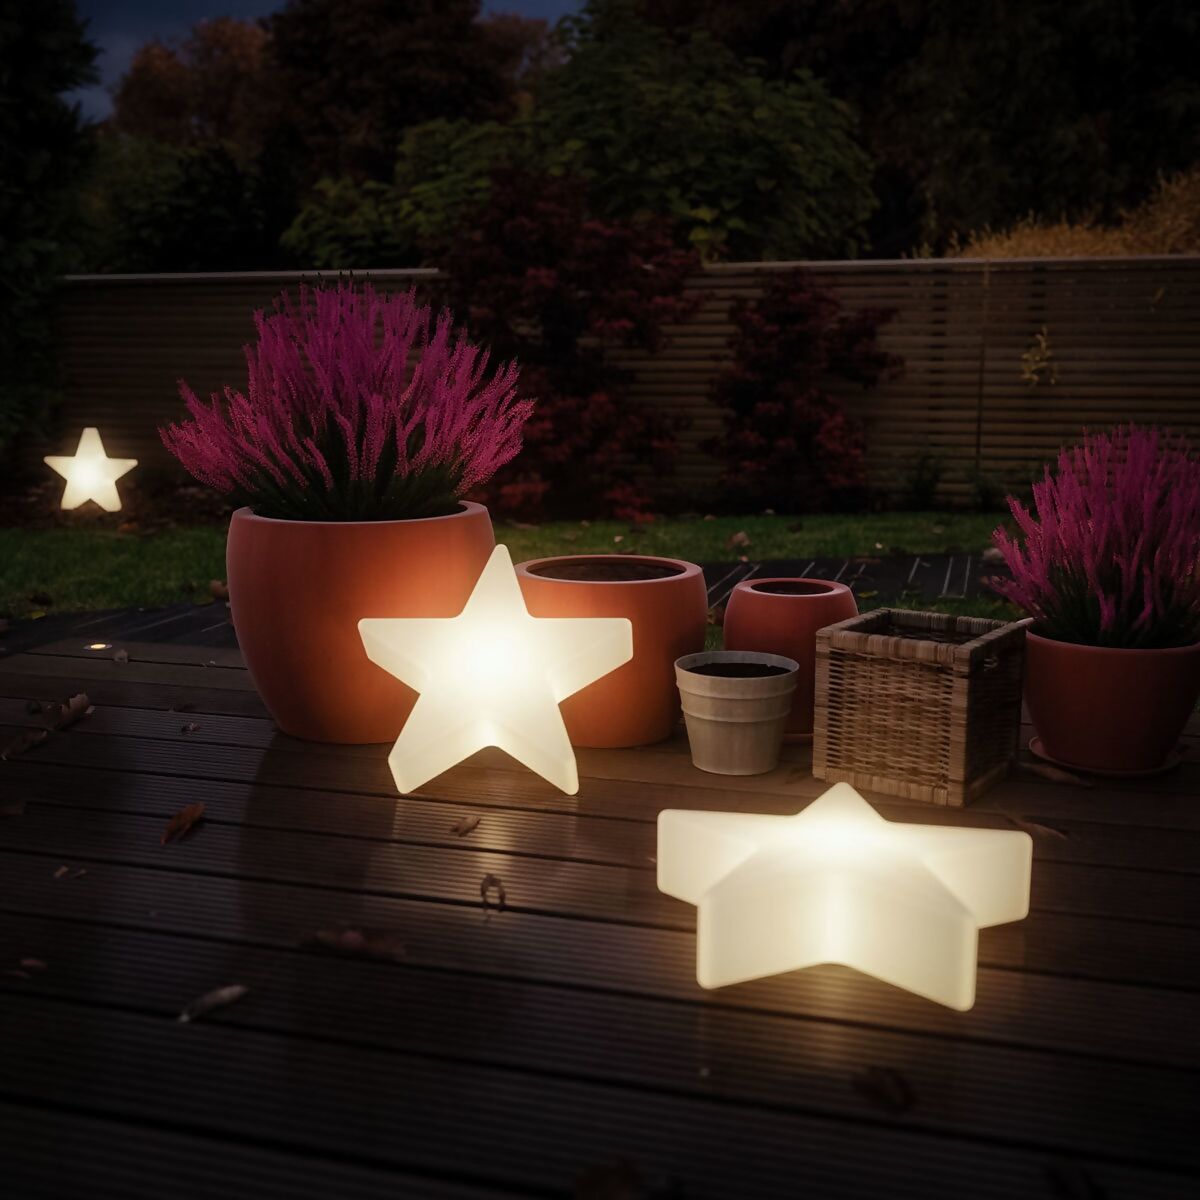 Perfekte Qualität, günstiger Preis! LED Bodenleuchte & Pötschke Plug bei Shine Star Gärtner kaufen online